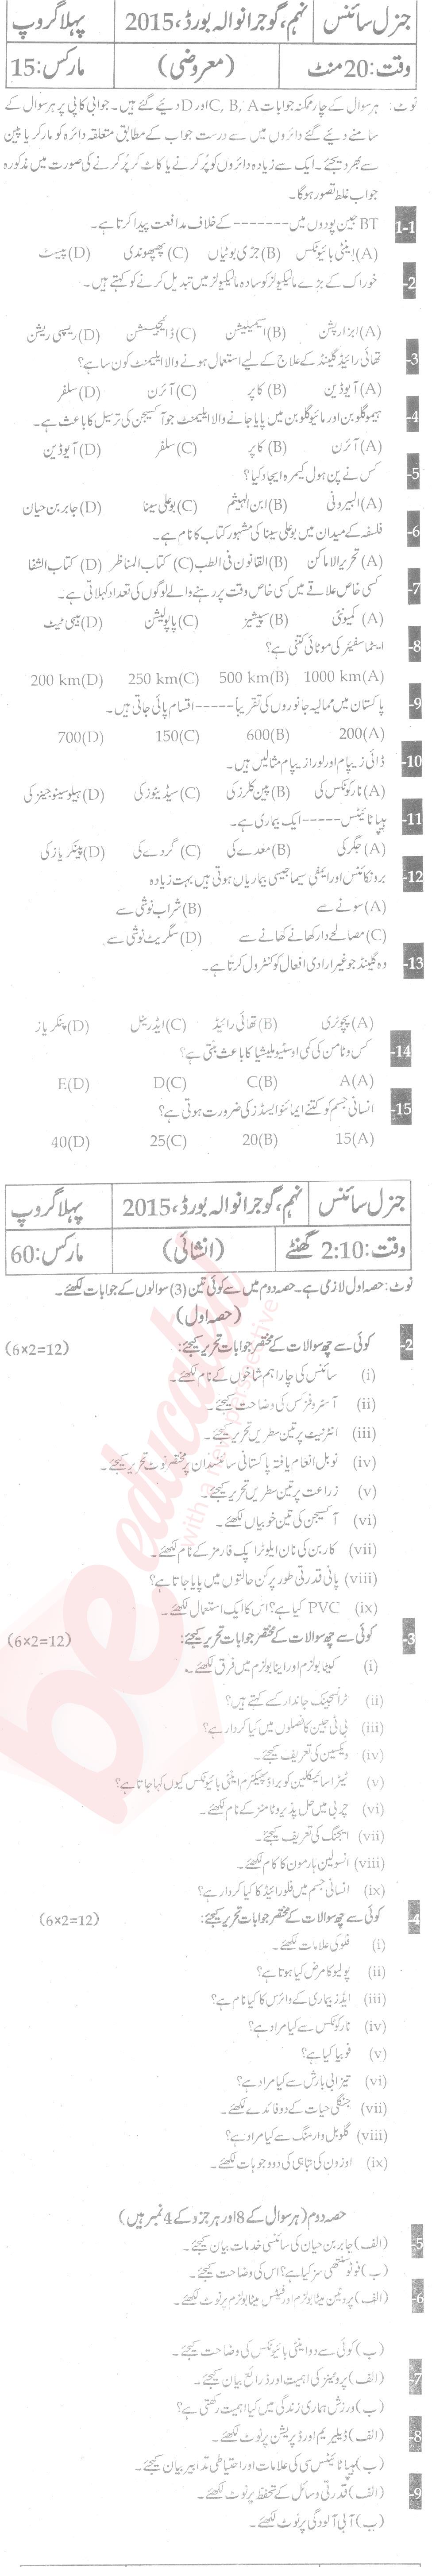 General Science 9th Urdu Medium Past Paper Group 1 BISE Gujranwala 2015